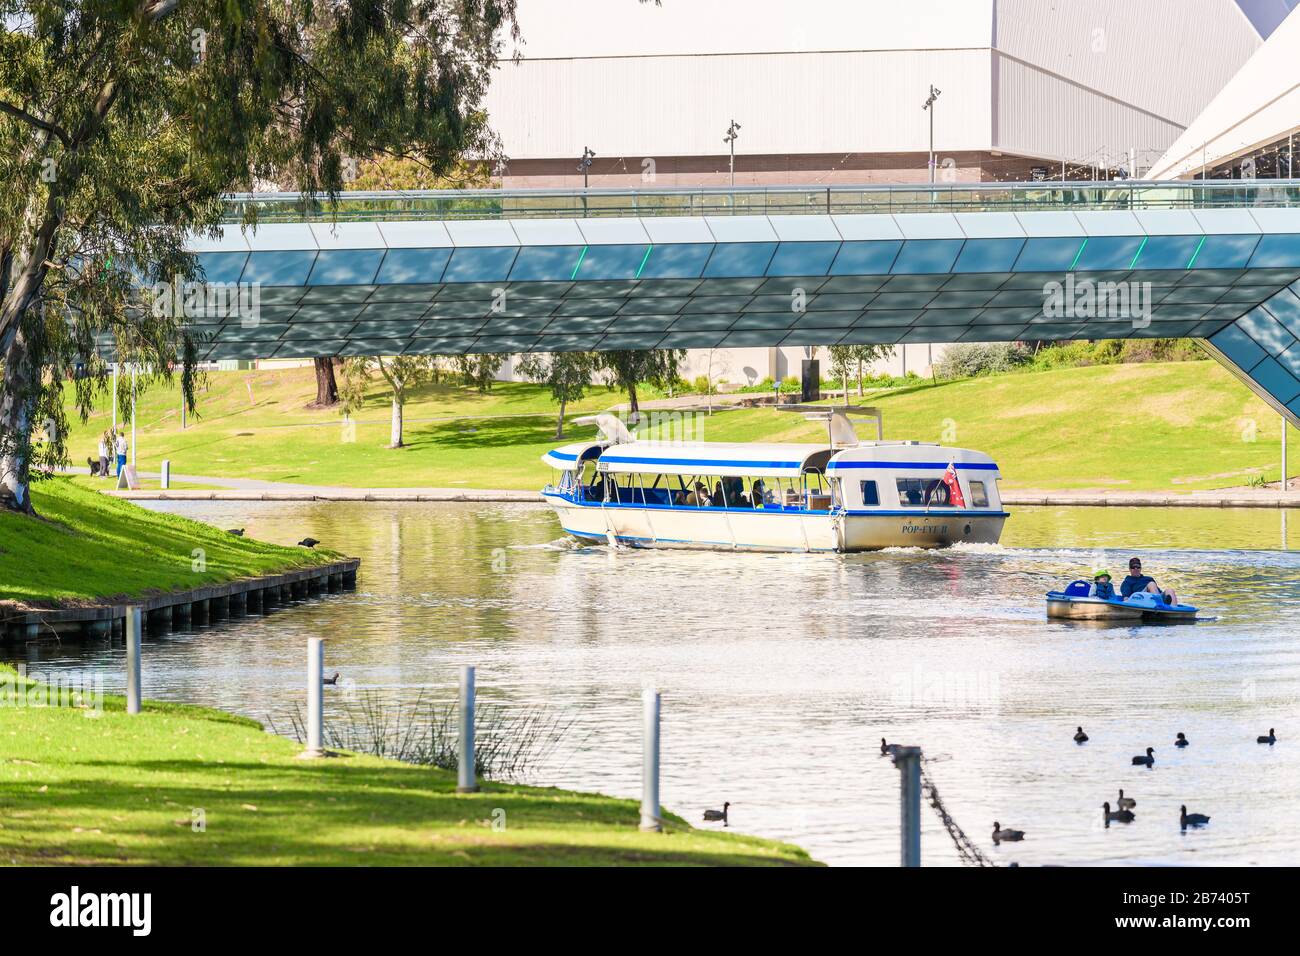 Adelaide, Australien - 4. August 2019: Ikonisches Pop-Eye-Boot mit Menschen an Bord, die an einem Tag am Fluss Torrens im Stadtzentrum von Adelaide segeln Stockfoto